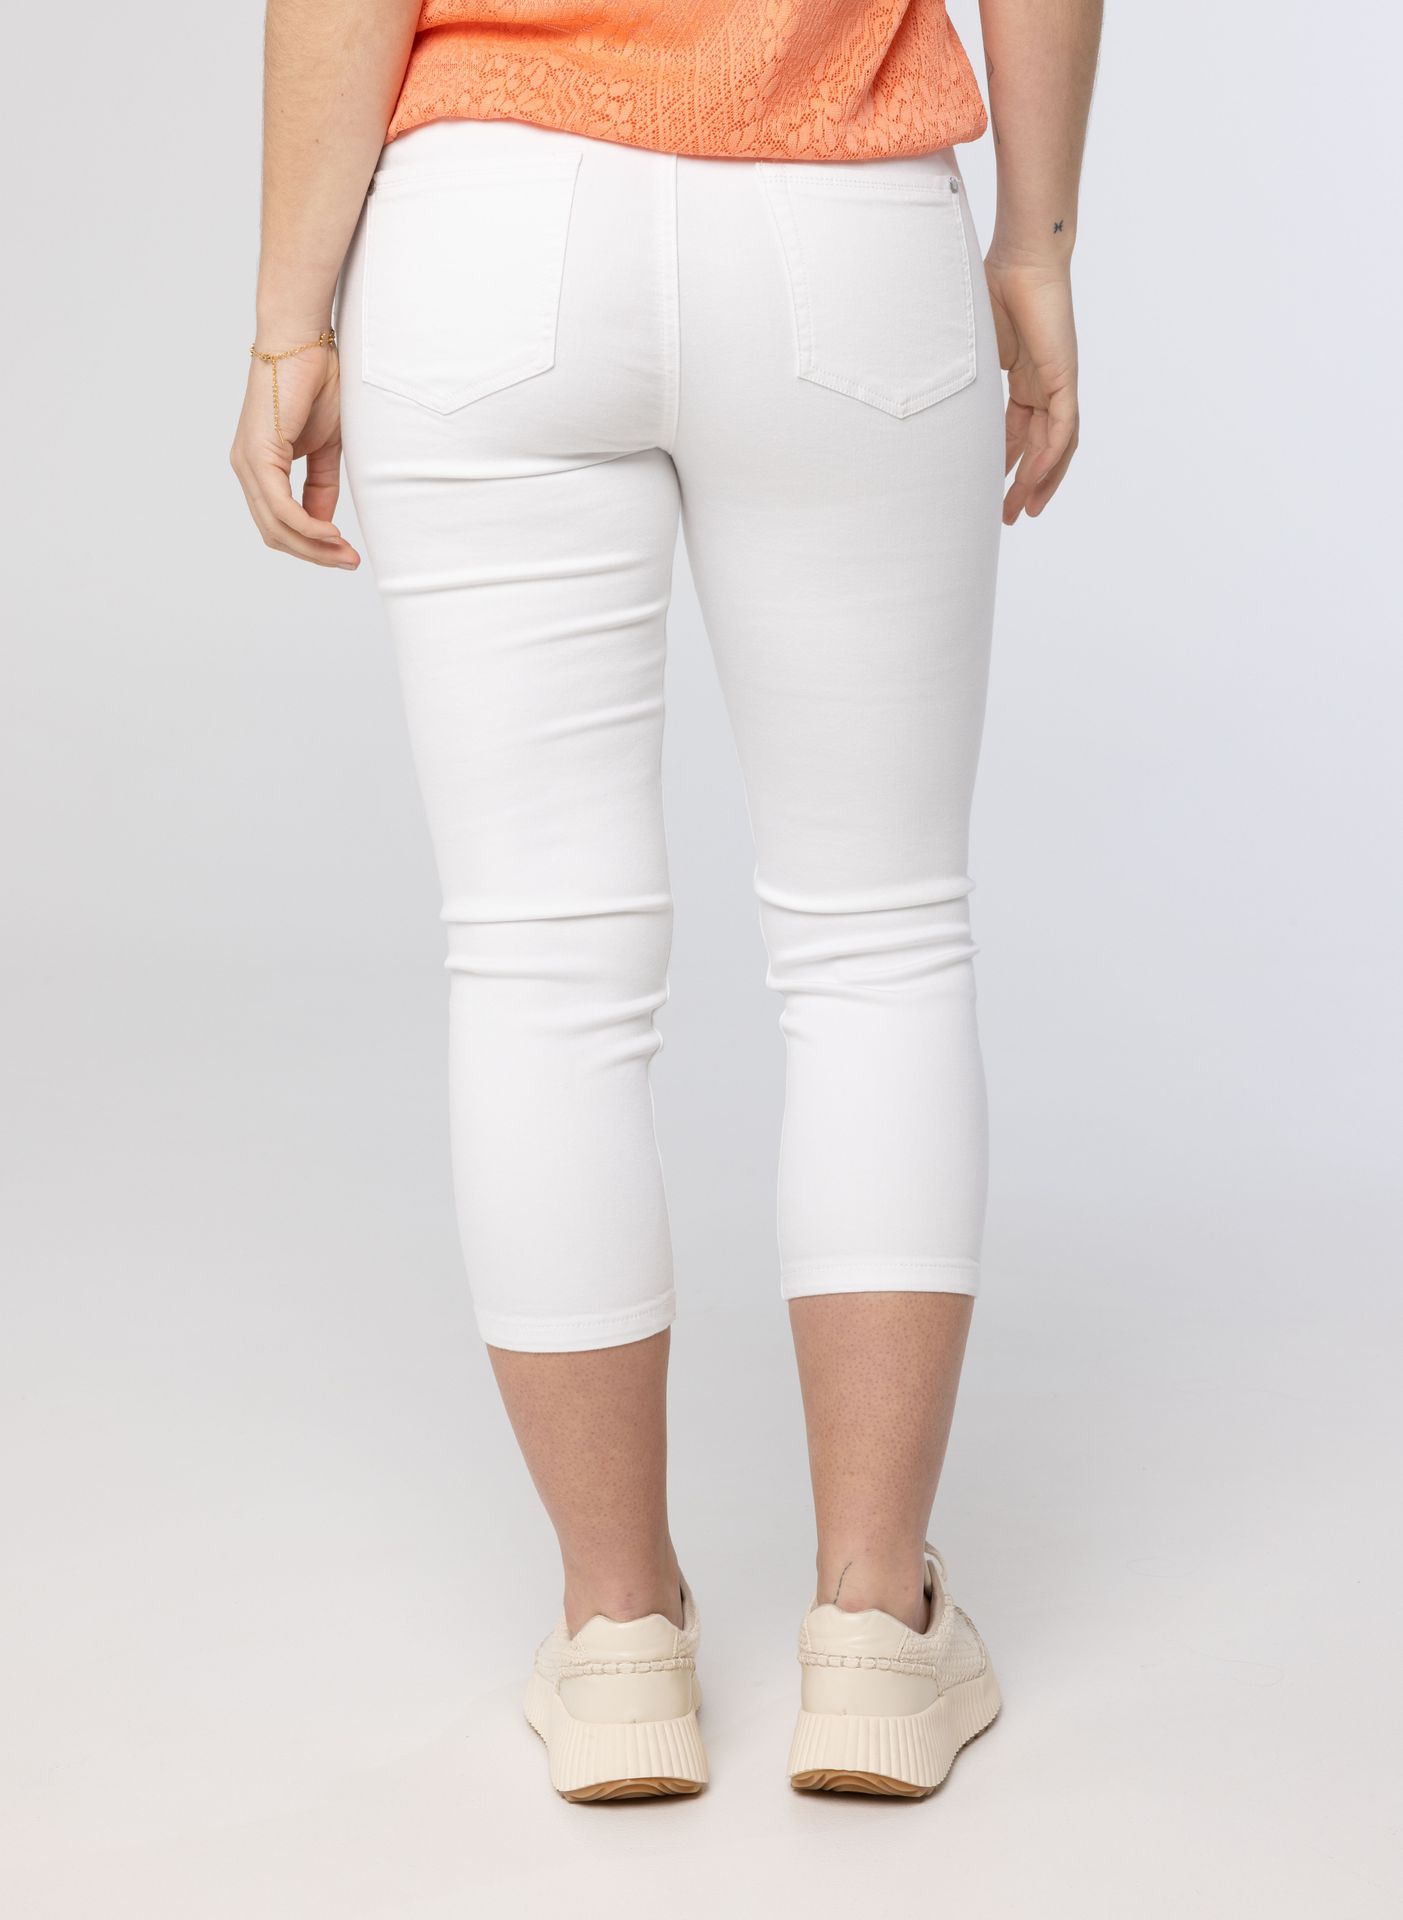 Norah Witte denim jeans white 213519-100